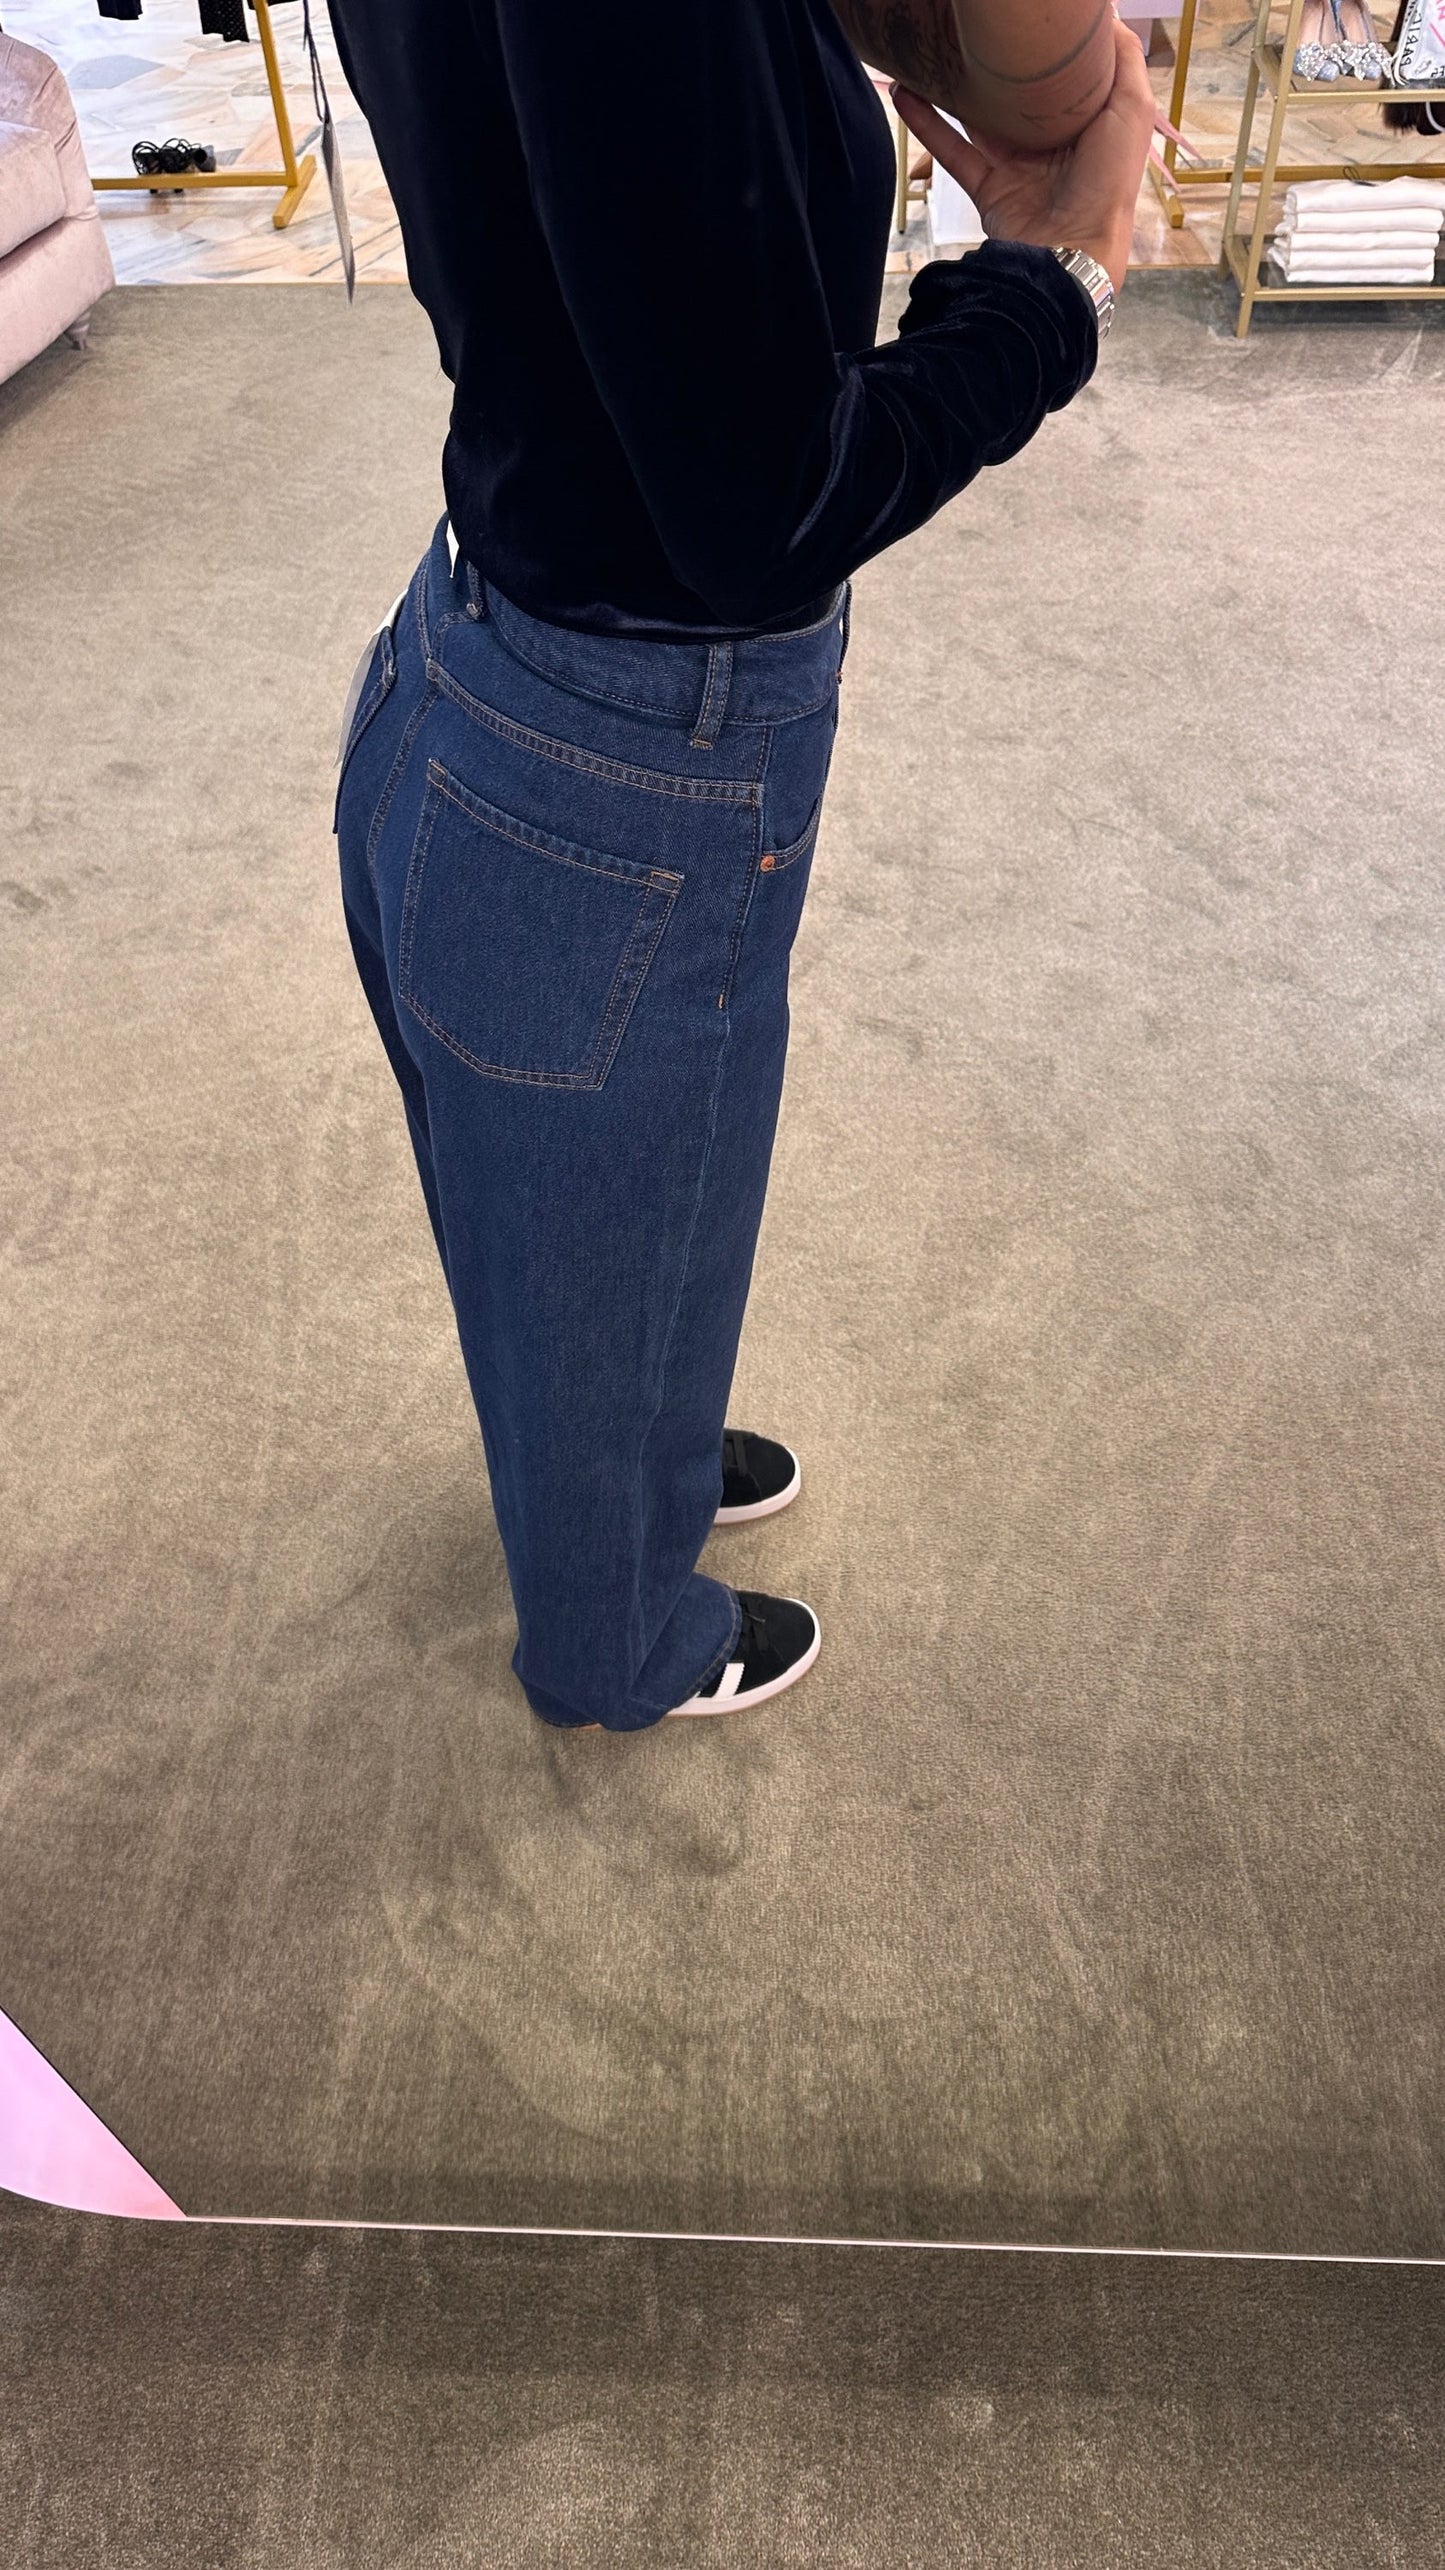 Jeans tokyo wideleg dark denim